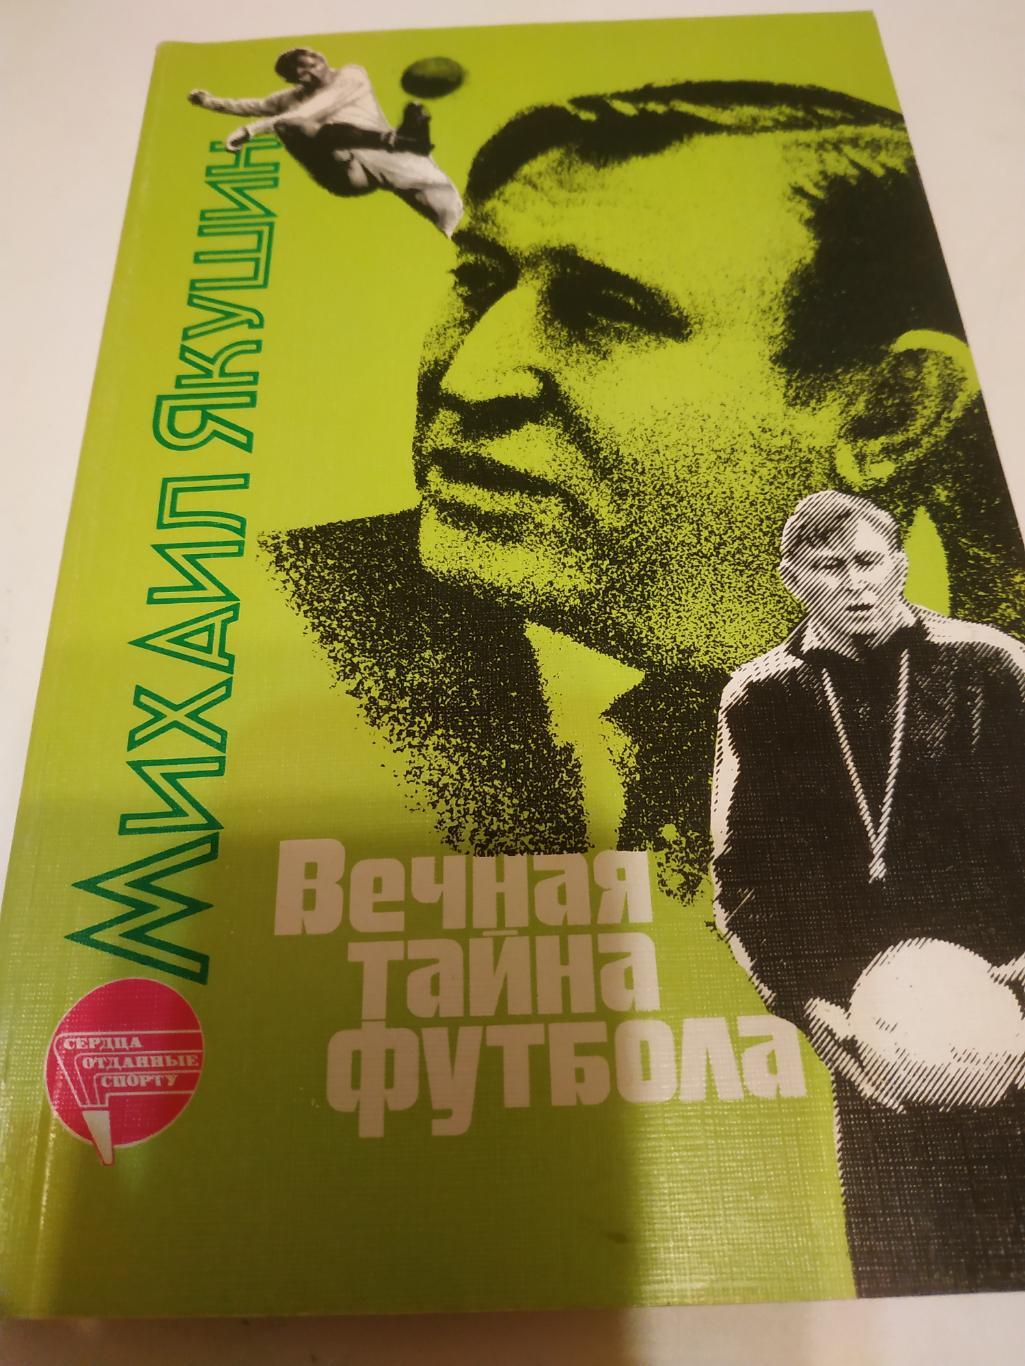 Михаил Якушин Вечная тайна футбола.ФиС. 1988